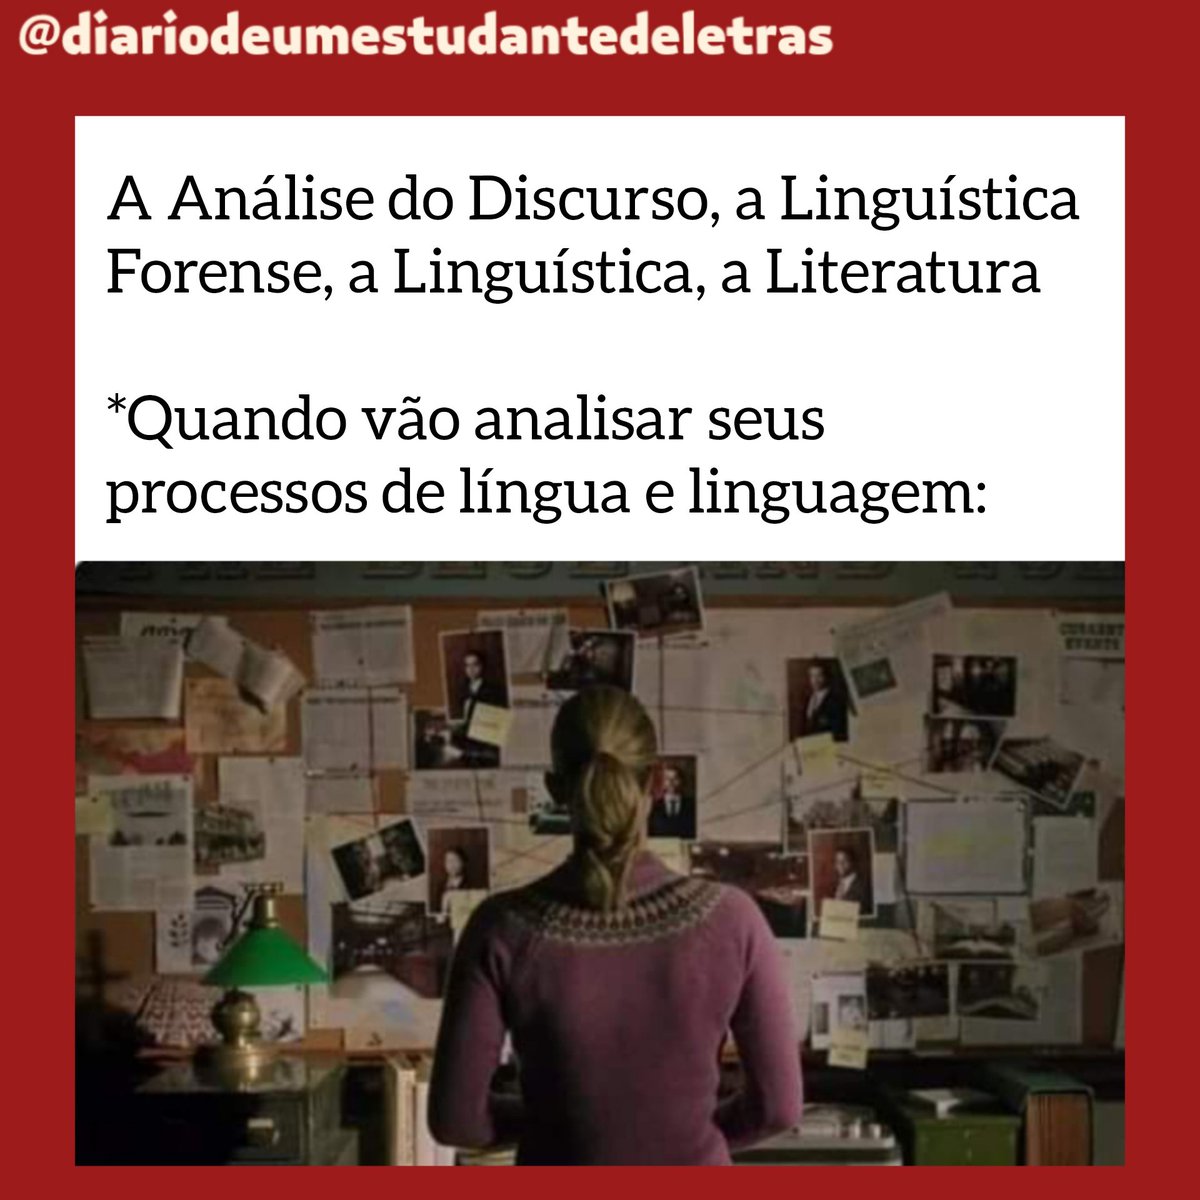 📌 Não deixam escapar nada... 🔎 #analisedodiscurso #linguísticaforense #linguistica #literatura #diariodeumestudantedeletras ⚜️